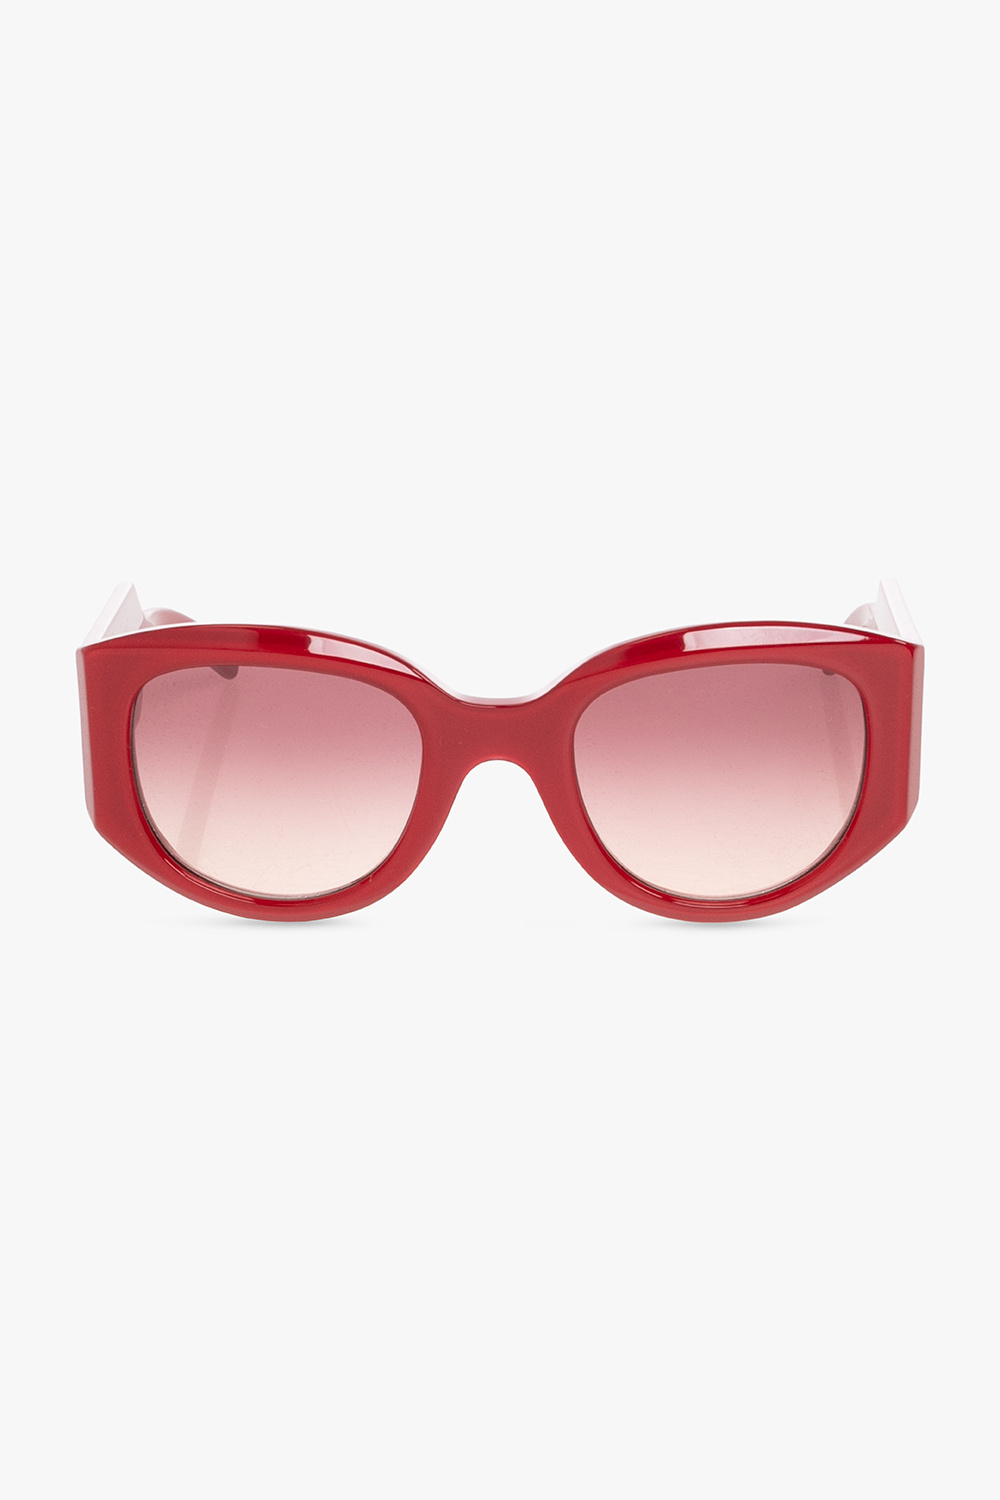 Emmanuelle Khanh Sunglasses